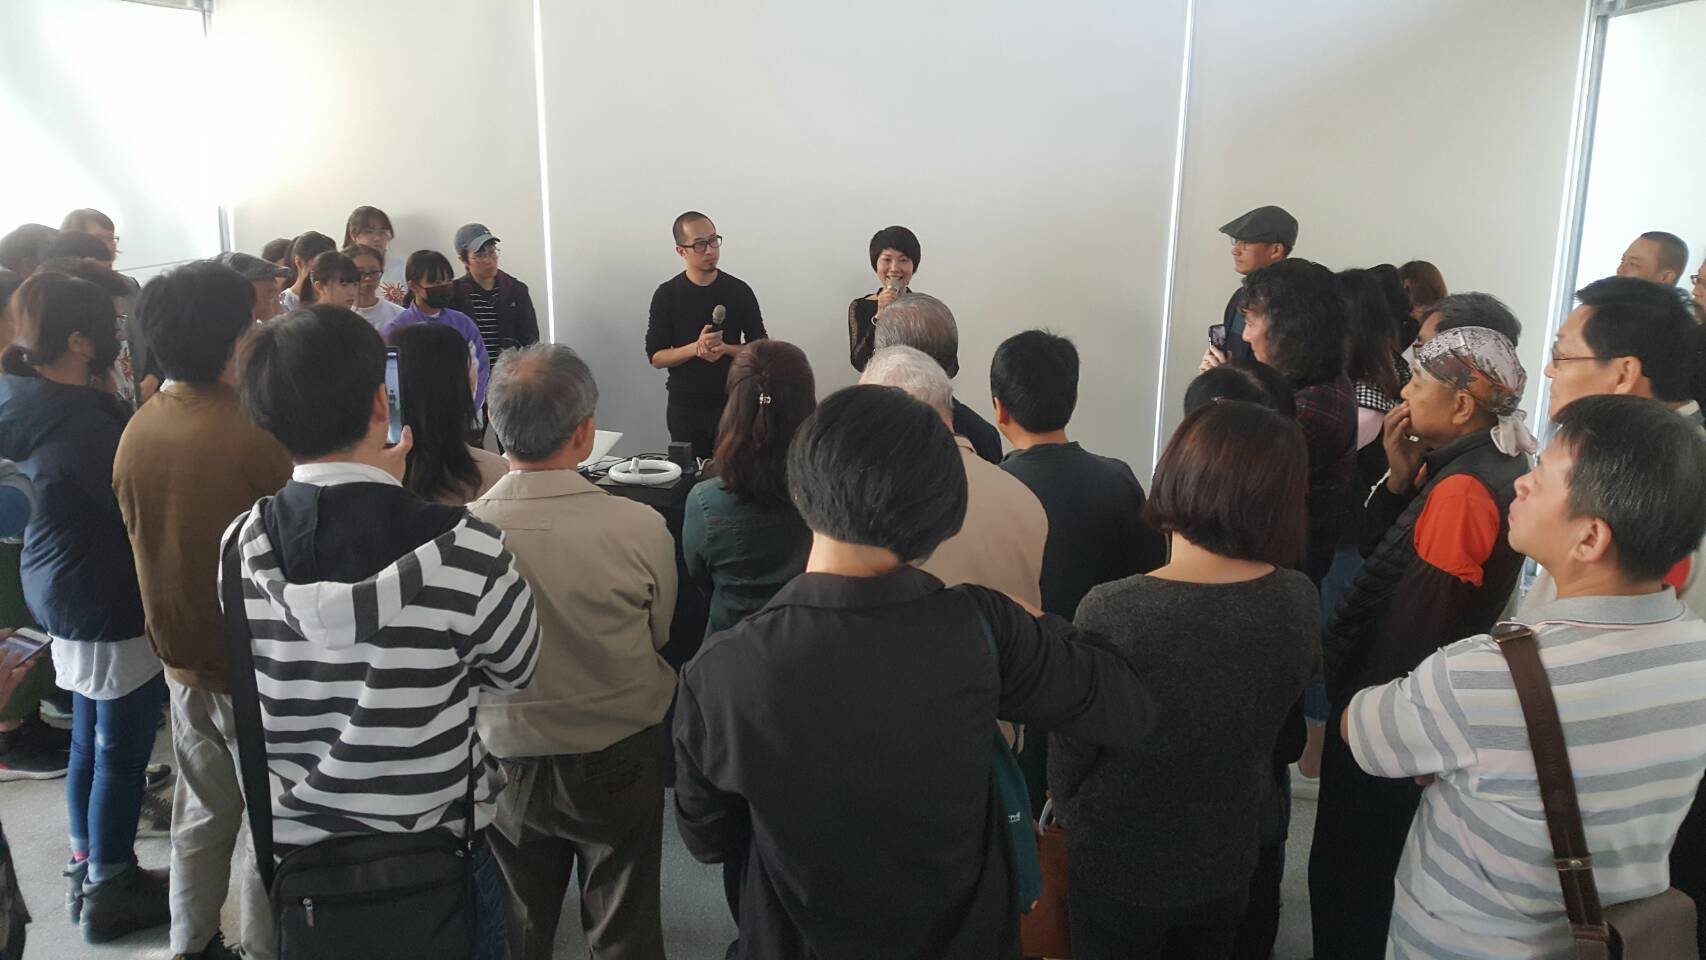 集聲光、視覺、聽覺及音樂雷射科技 藝術家姚仲涵在文化工場展出